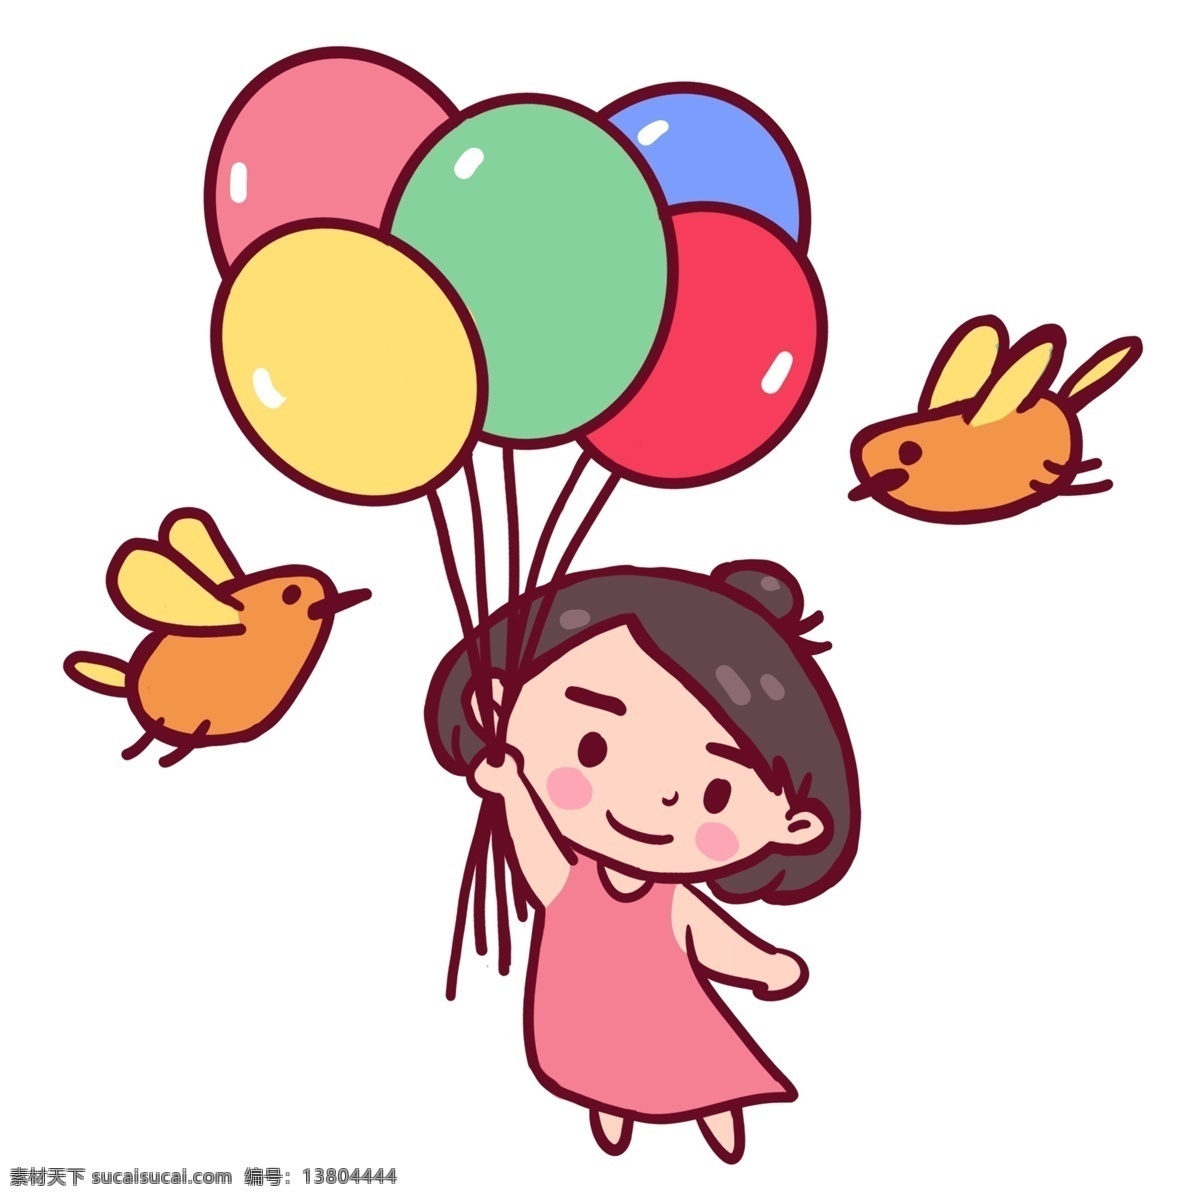 六一儿童节 带 梦想 去 飞翔 六一 儿童节 欢乐 小姑娘 小鸟 气球 玩耍 开心 庆祝六一 开心过六一 原创 手绘 可爱风